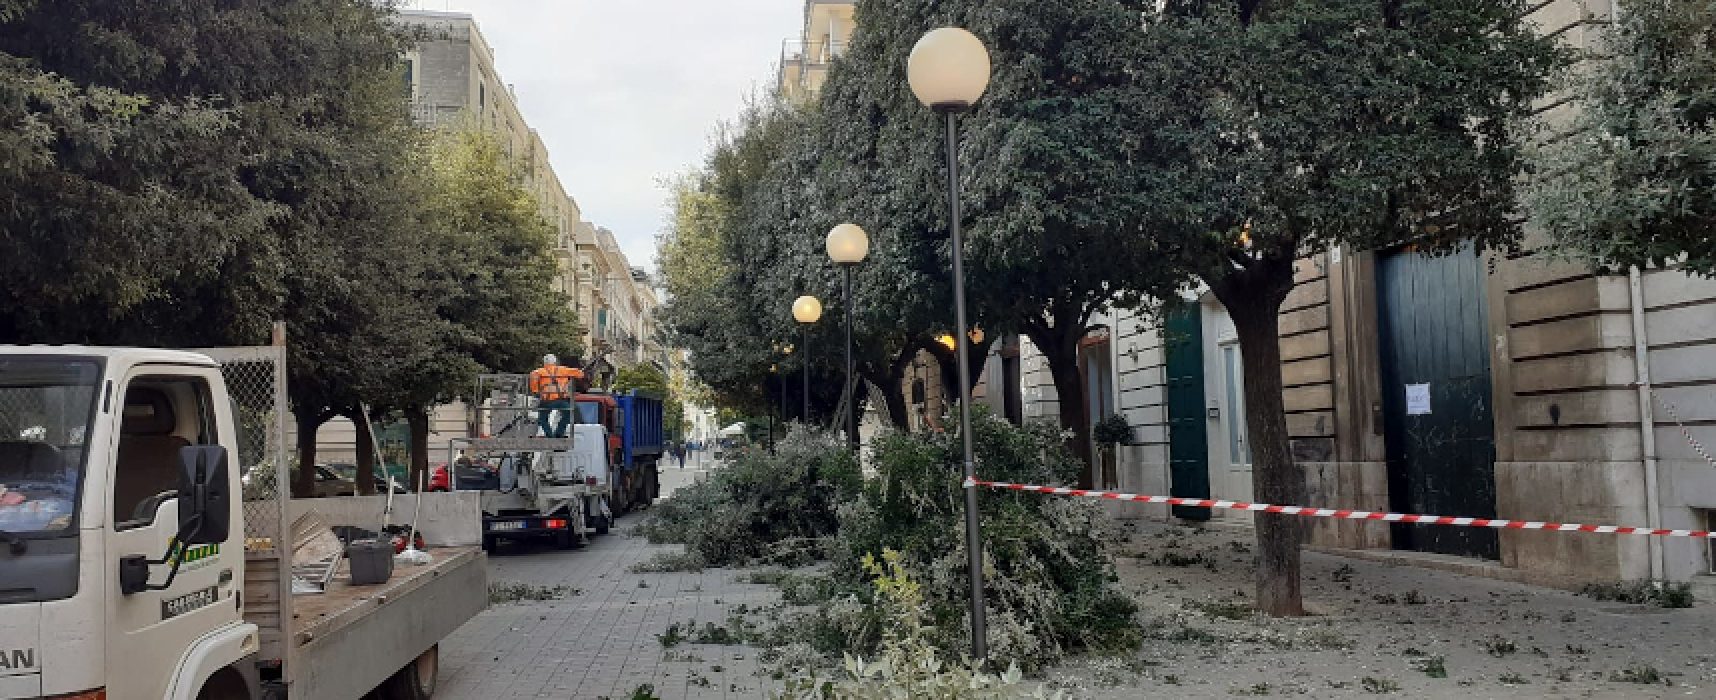 Interventi di potatura alberi in tutta la città, Natale Parisi: “Si proseguirà sino a marzo”